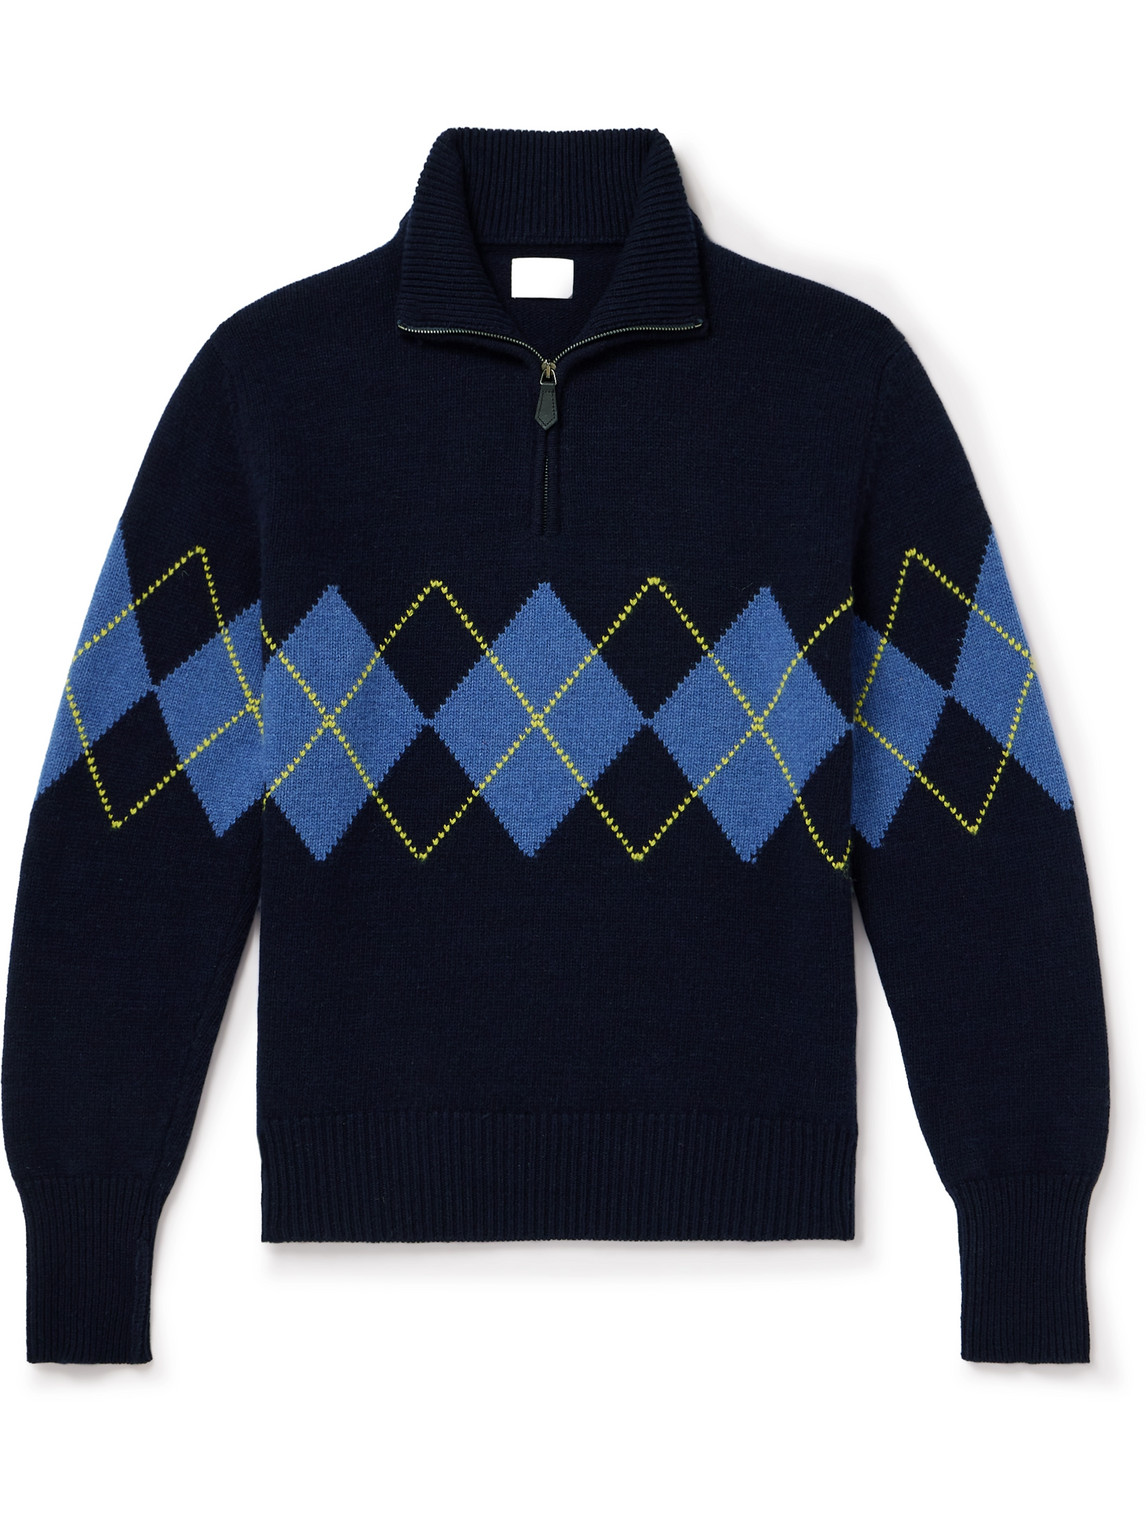 Argylle Jacquard-Knit Wool Half-Zip Sweater